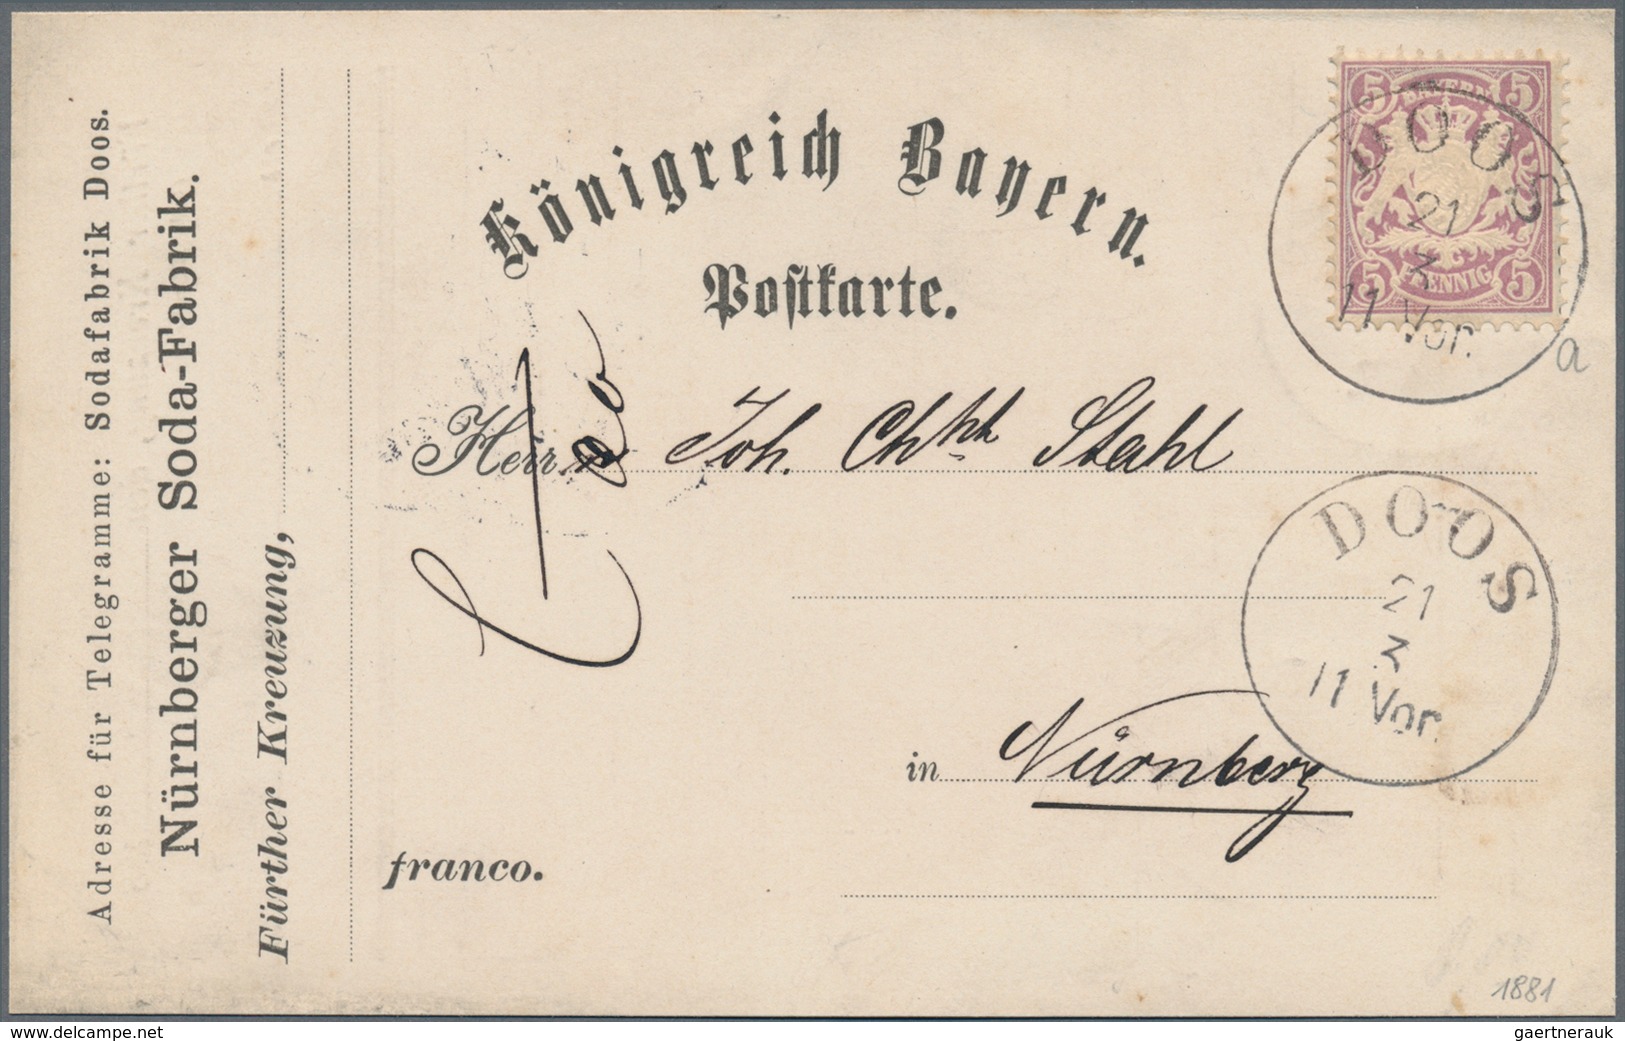 Bayern - Marken und Briefe: 1876-1920 inkl. Porto und Dienst, umfangreiches Studienmaterial mit taus